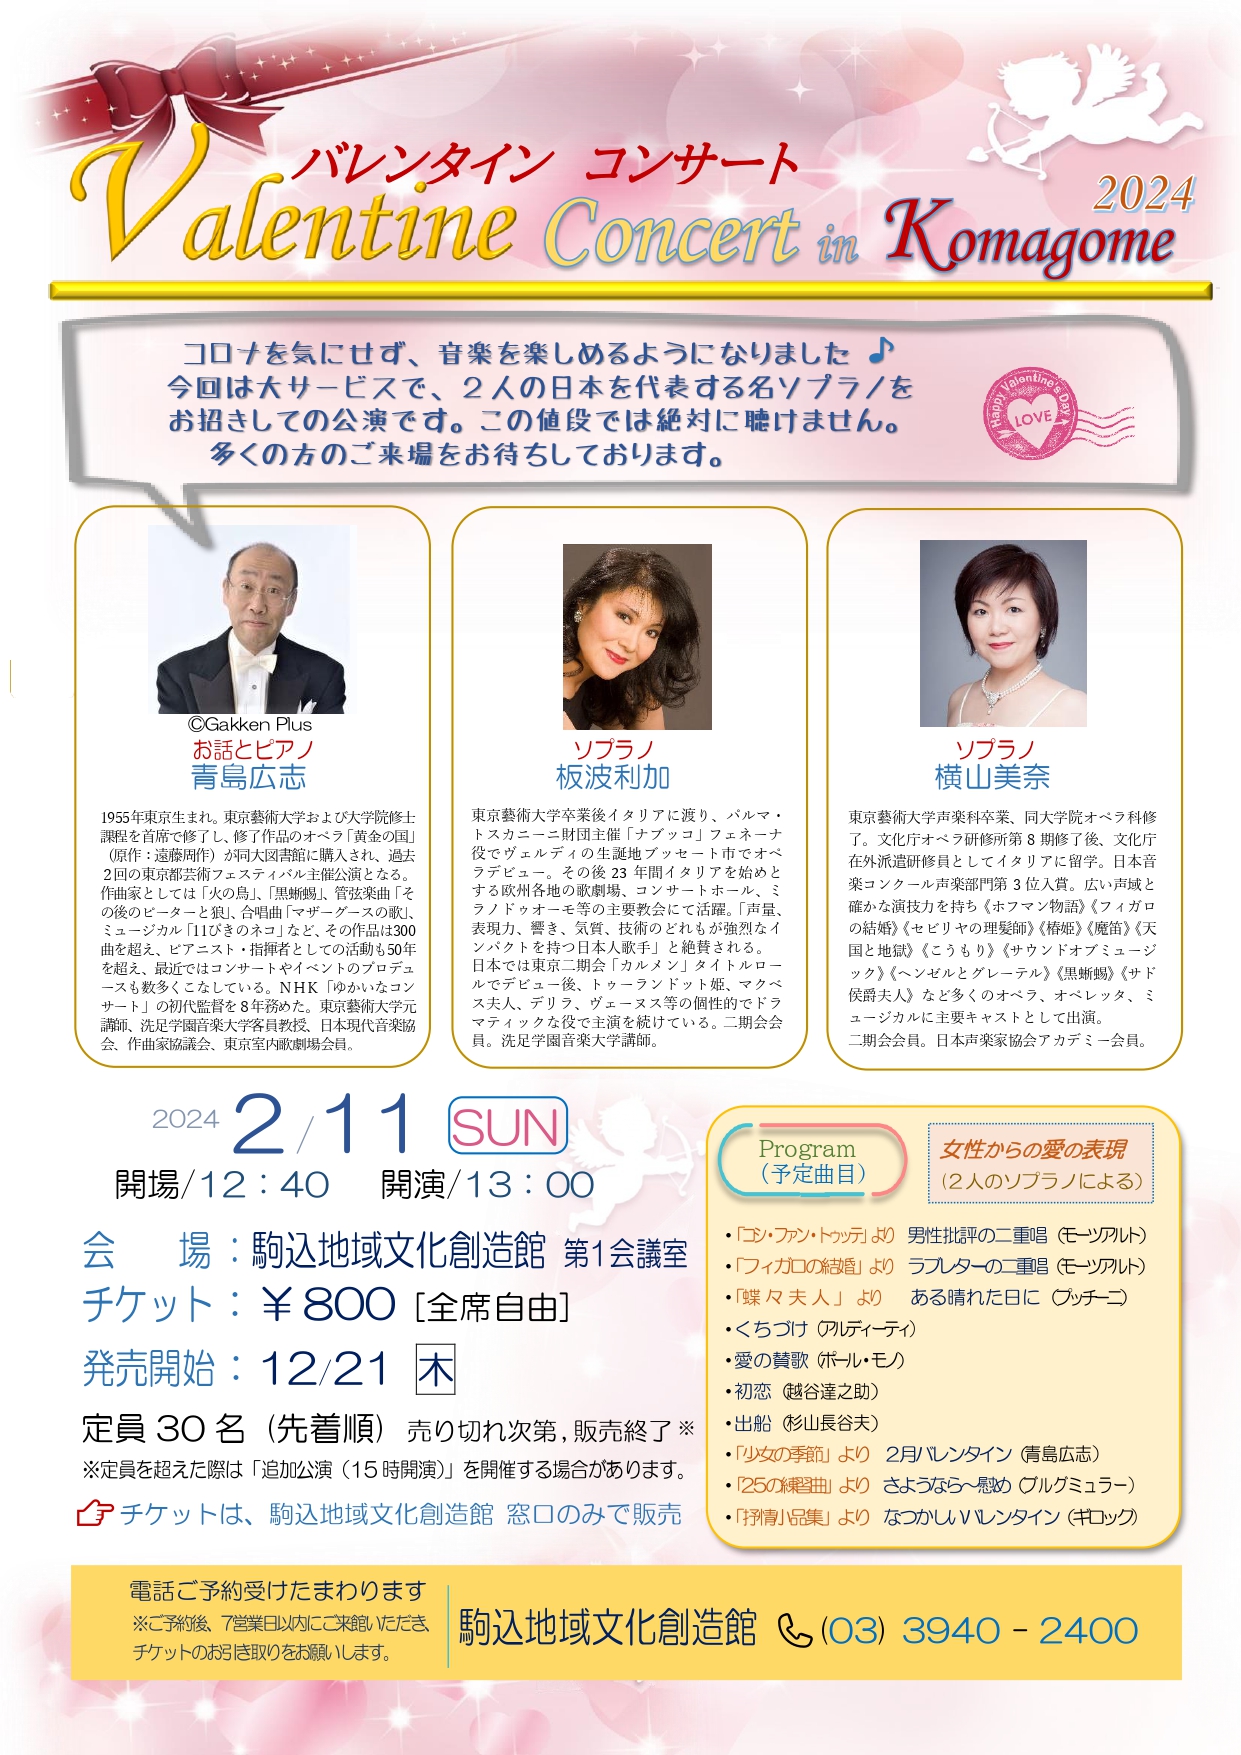 Valentine Concert in Komagome 2024
